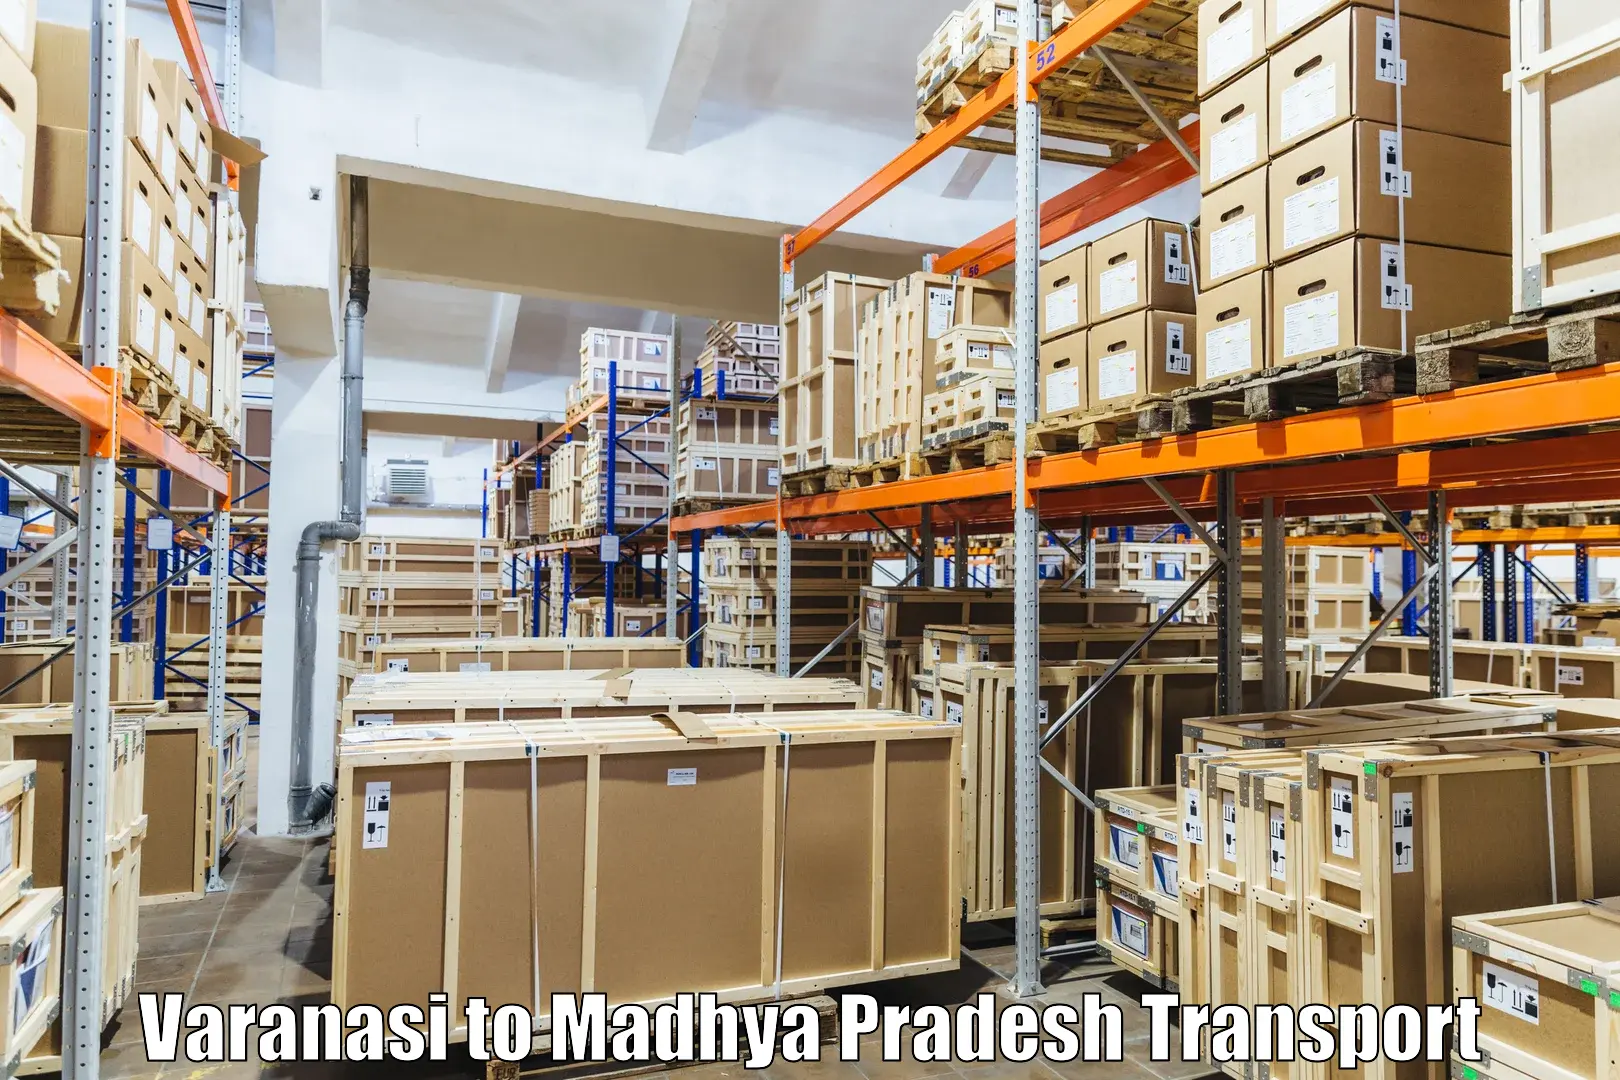 International cargo transportation services Varanasi to Ashoknagar